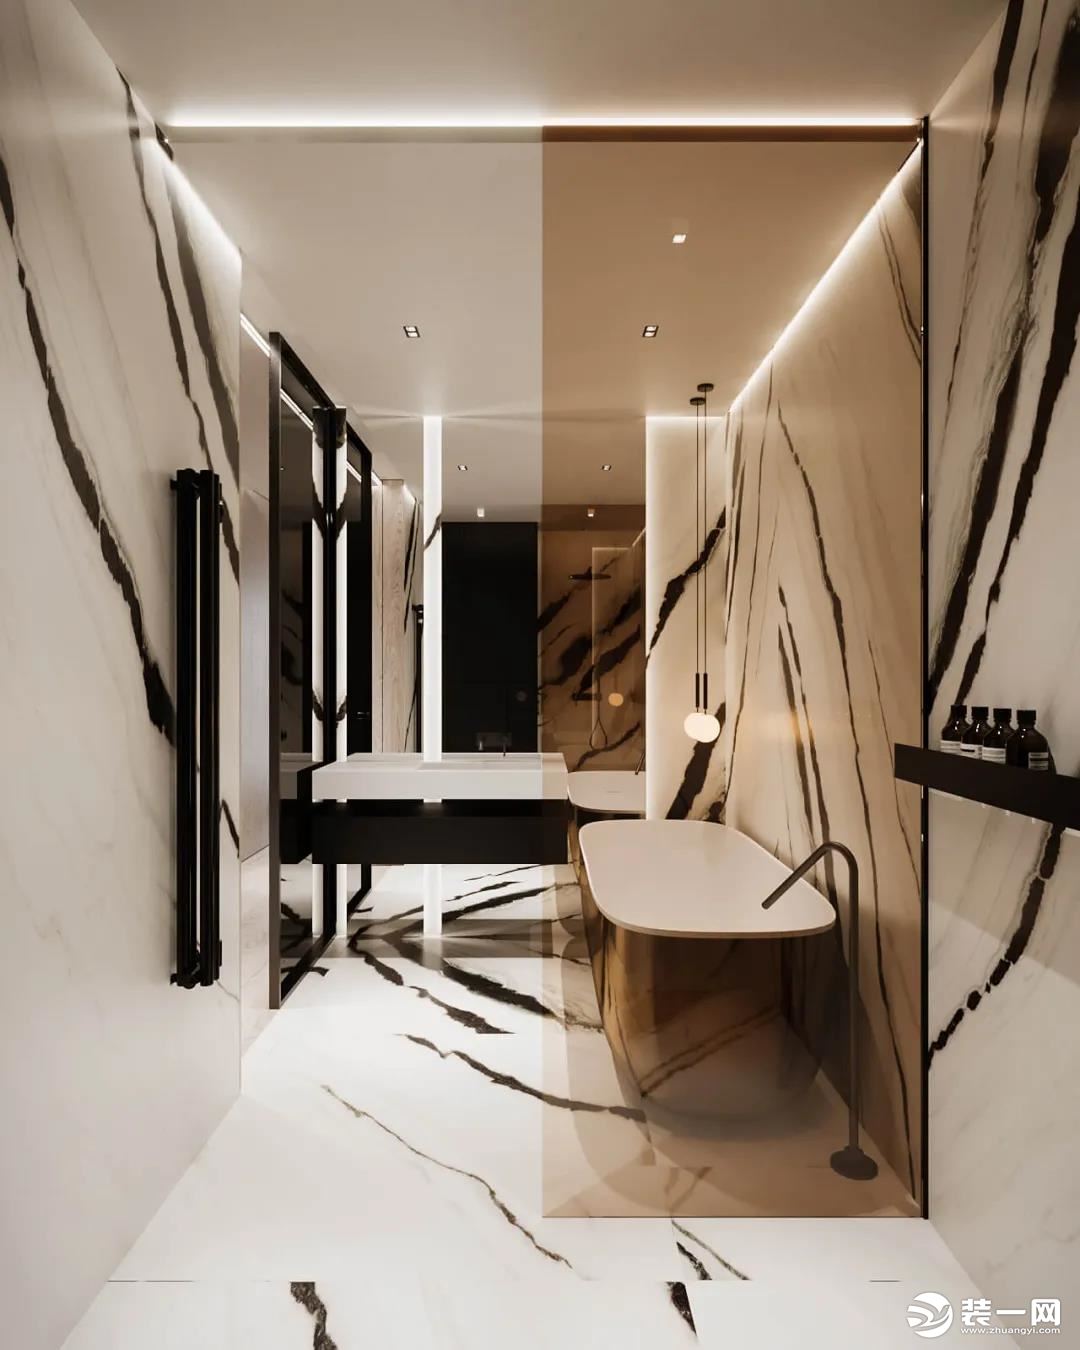 现代风暖色调浴室设计效果图